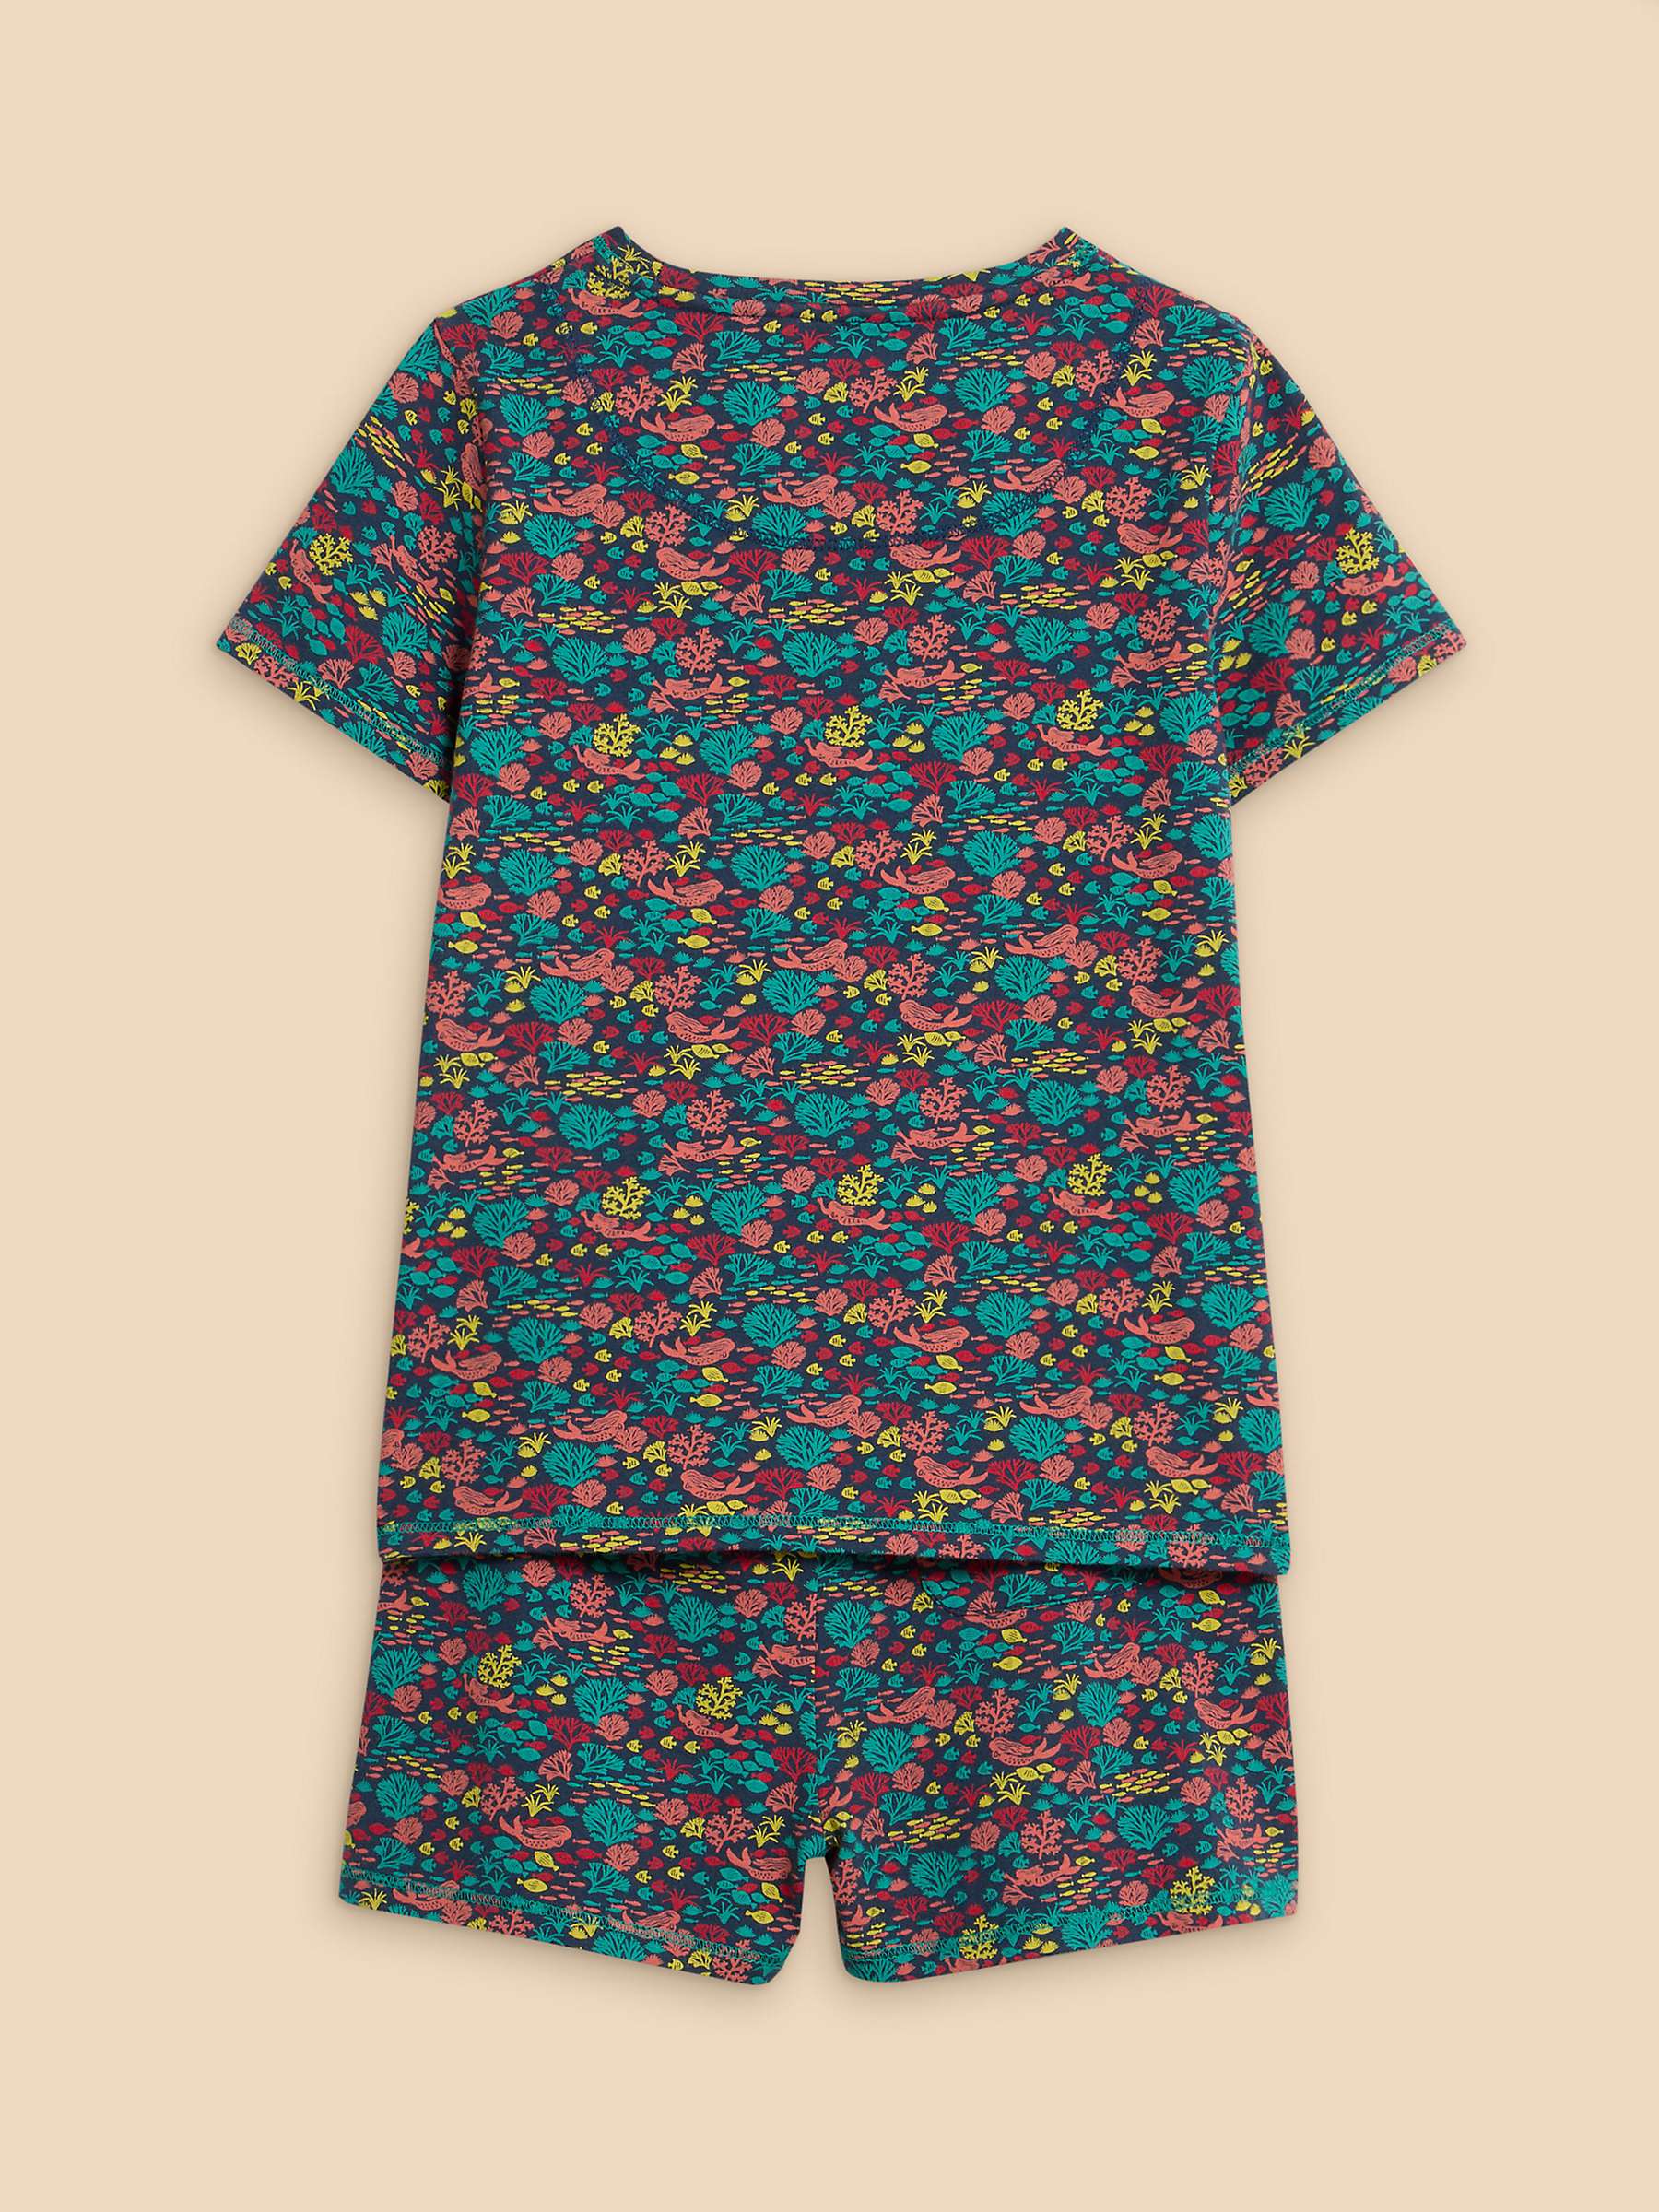 Buy White Stuff Kids' Sealife Print Shorts Pyjamas Set, Navy/Multi Online at johnlewis.com